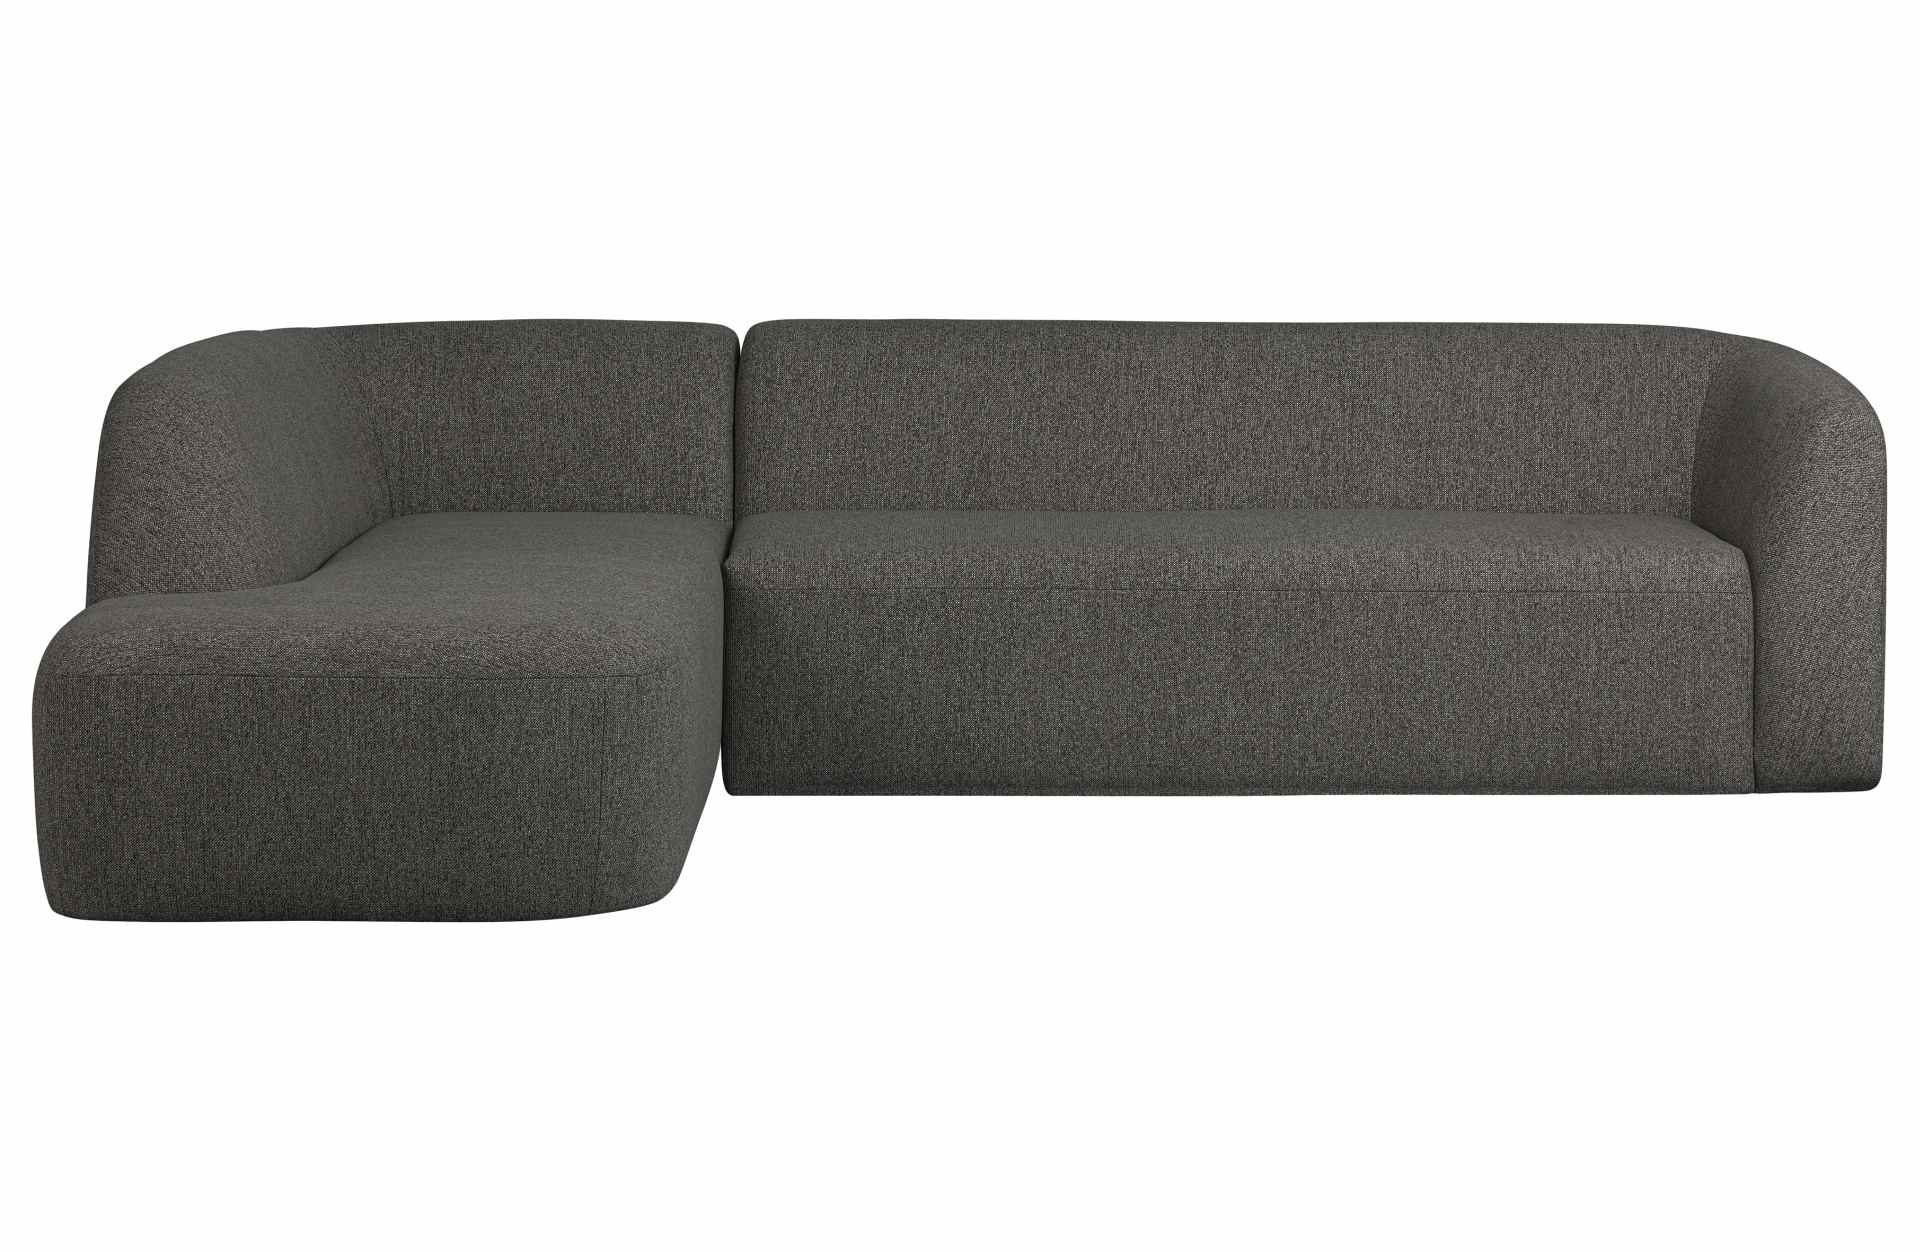 Das Ecksofa Sloping wurde aus bequemen Stoff gefertigt, welcher einen Dunkelgrauen Farbton besitzt. Das Sofa ist ein echter Hingucker für dein Zuhause, denn es hat ein modernes Design, welches zu jeder Inneneinrichtung passt.